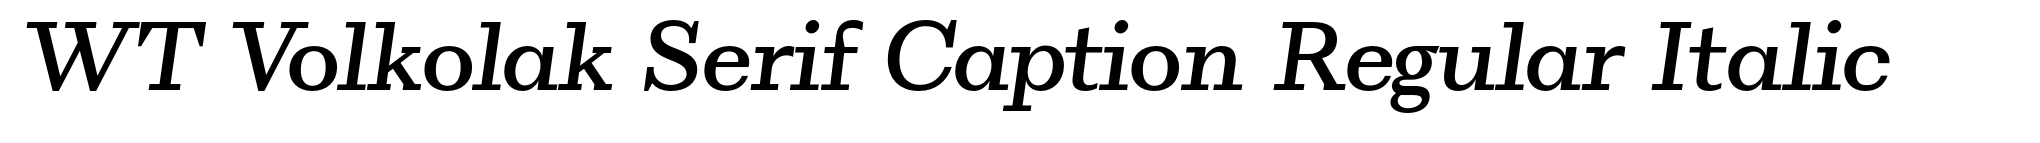 WT Volkolak Serif Caption Regular Italic image